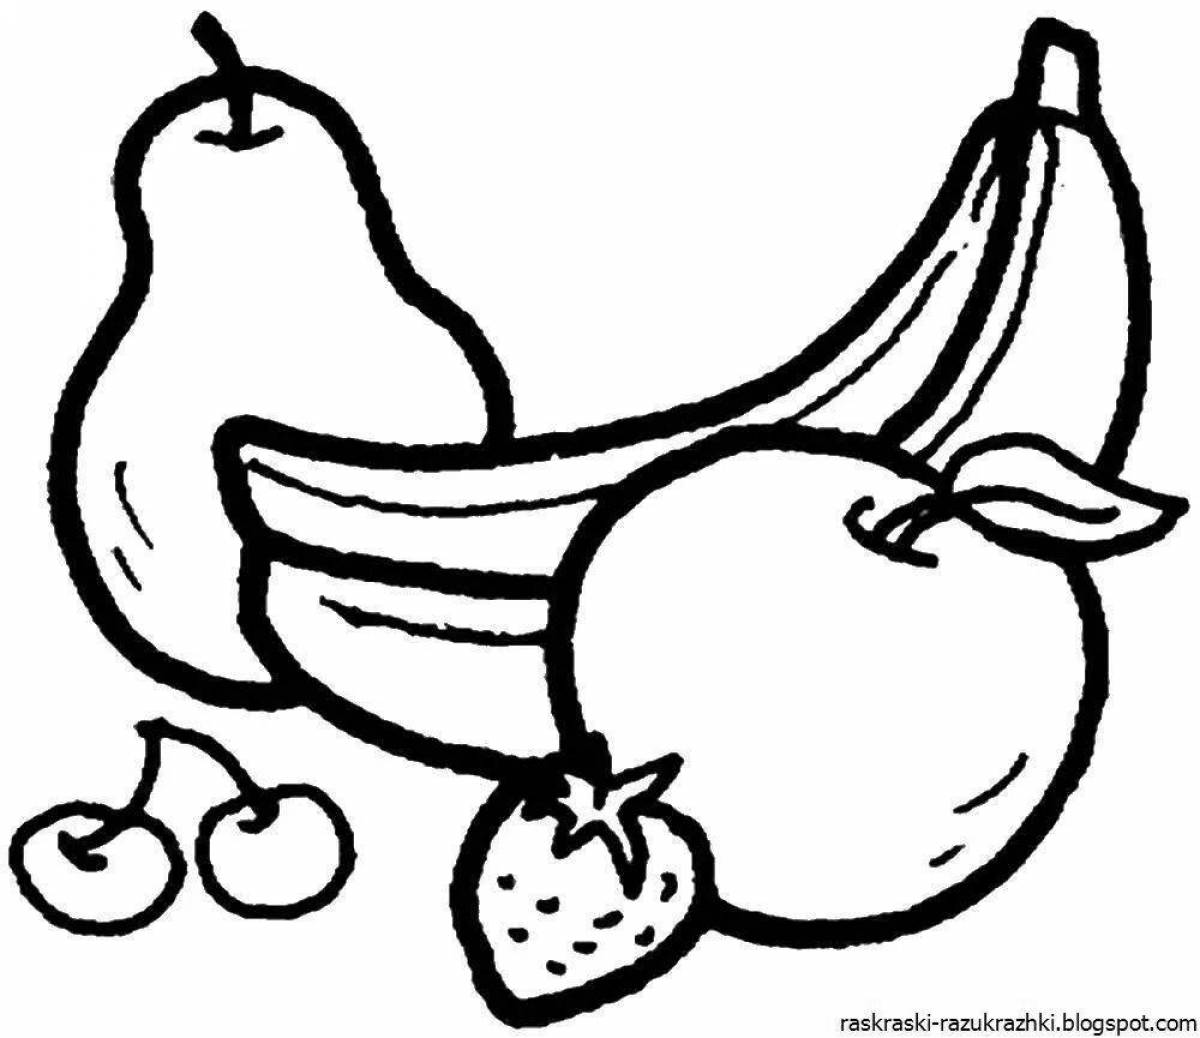 Привлекательный натюрморт из овощей и фруктов для детей